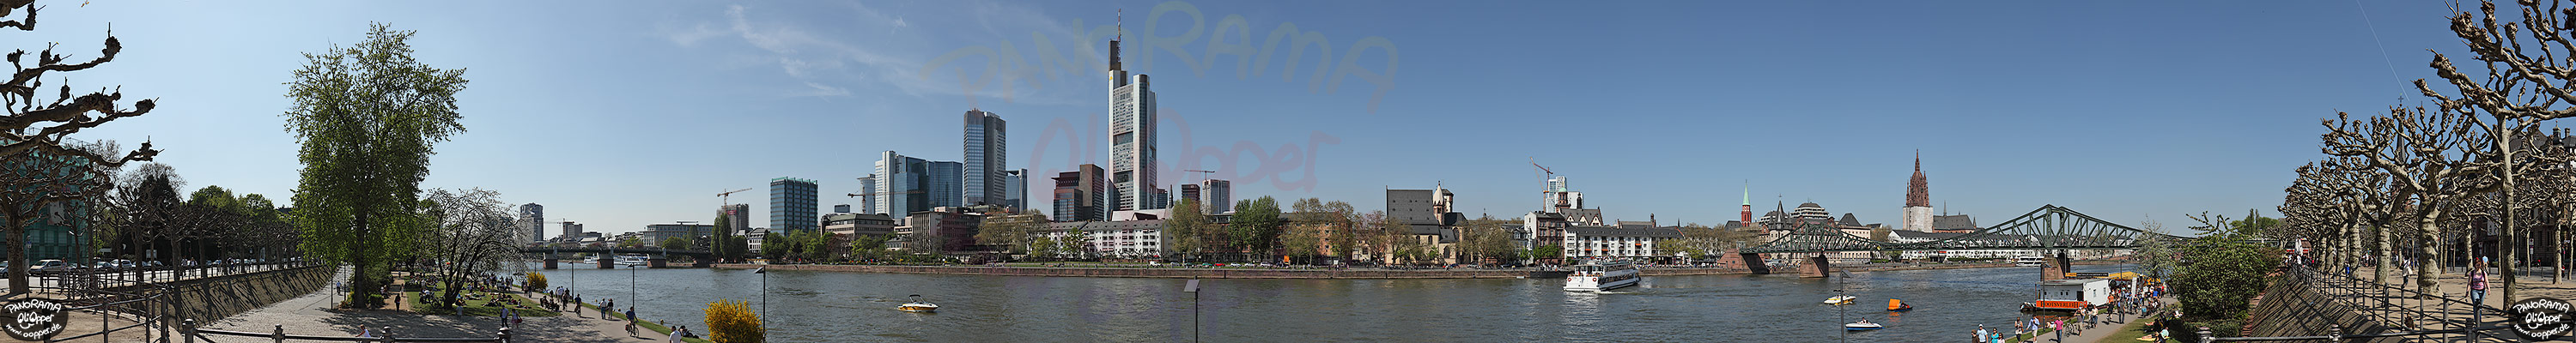 Frankfurt am Main - Rund um den Eisernen Steg im Frhling - p416 - (c) by Oliver Opper